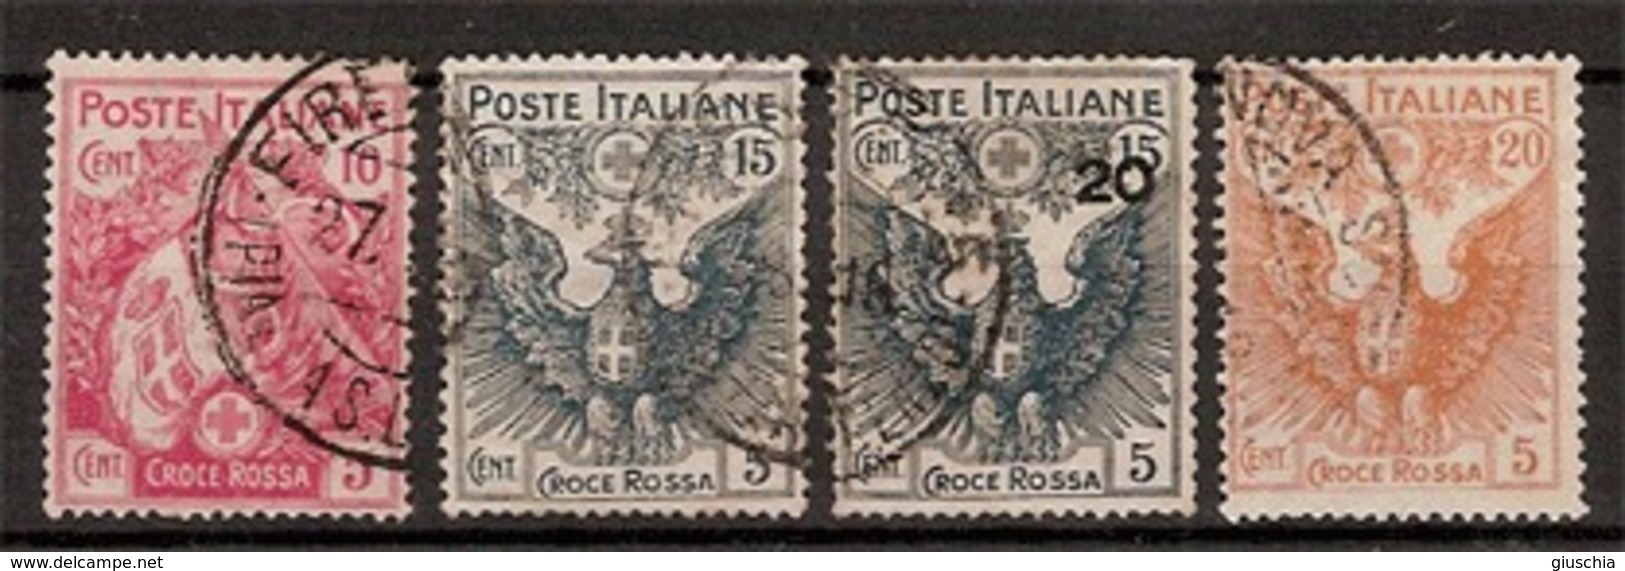 (Fb).Regno.V.E.III.1915-16."Pro Croce Rossa".Serie Completa Usata (37-19) - Usati